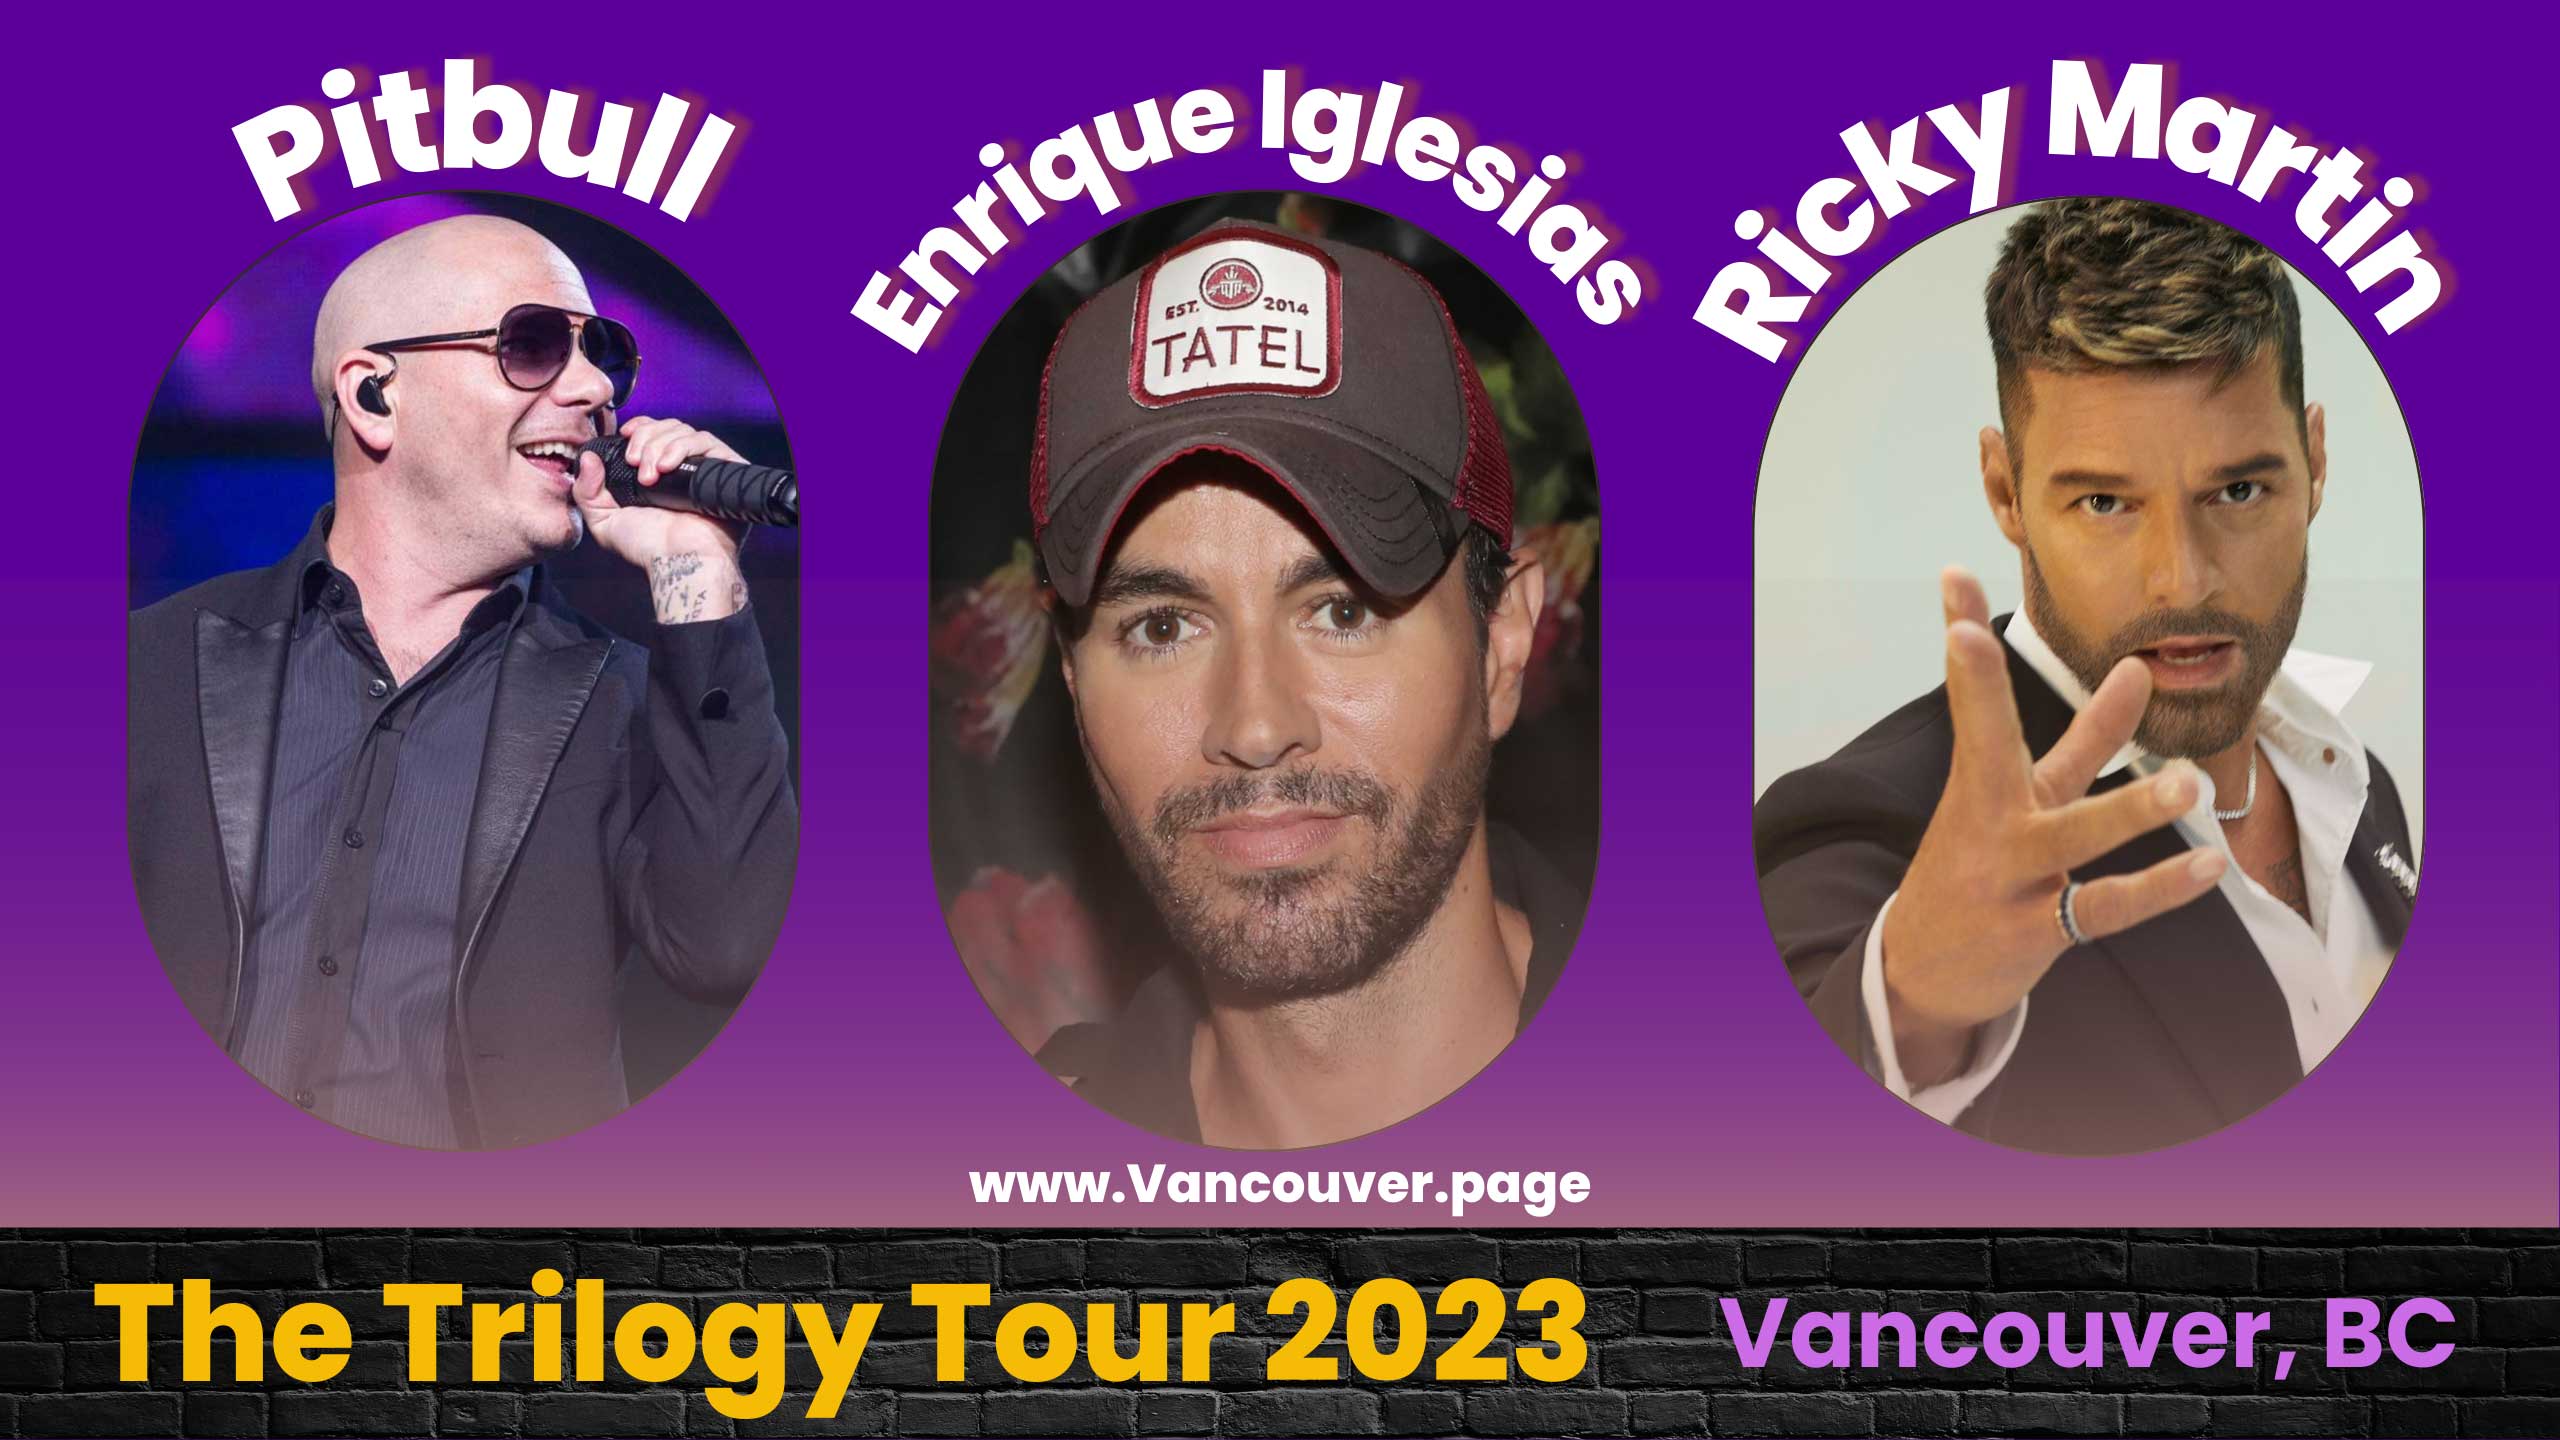 pitbull and enrique iglesias tour 2023